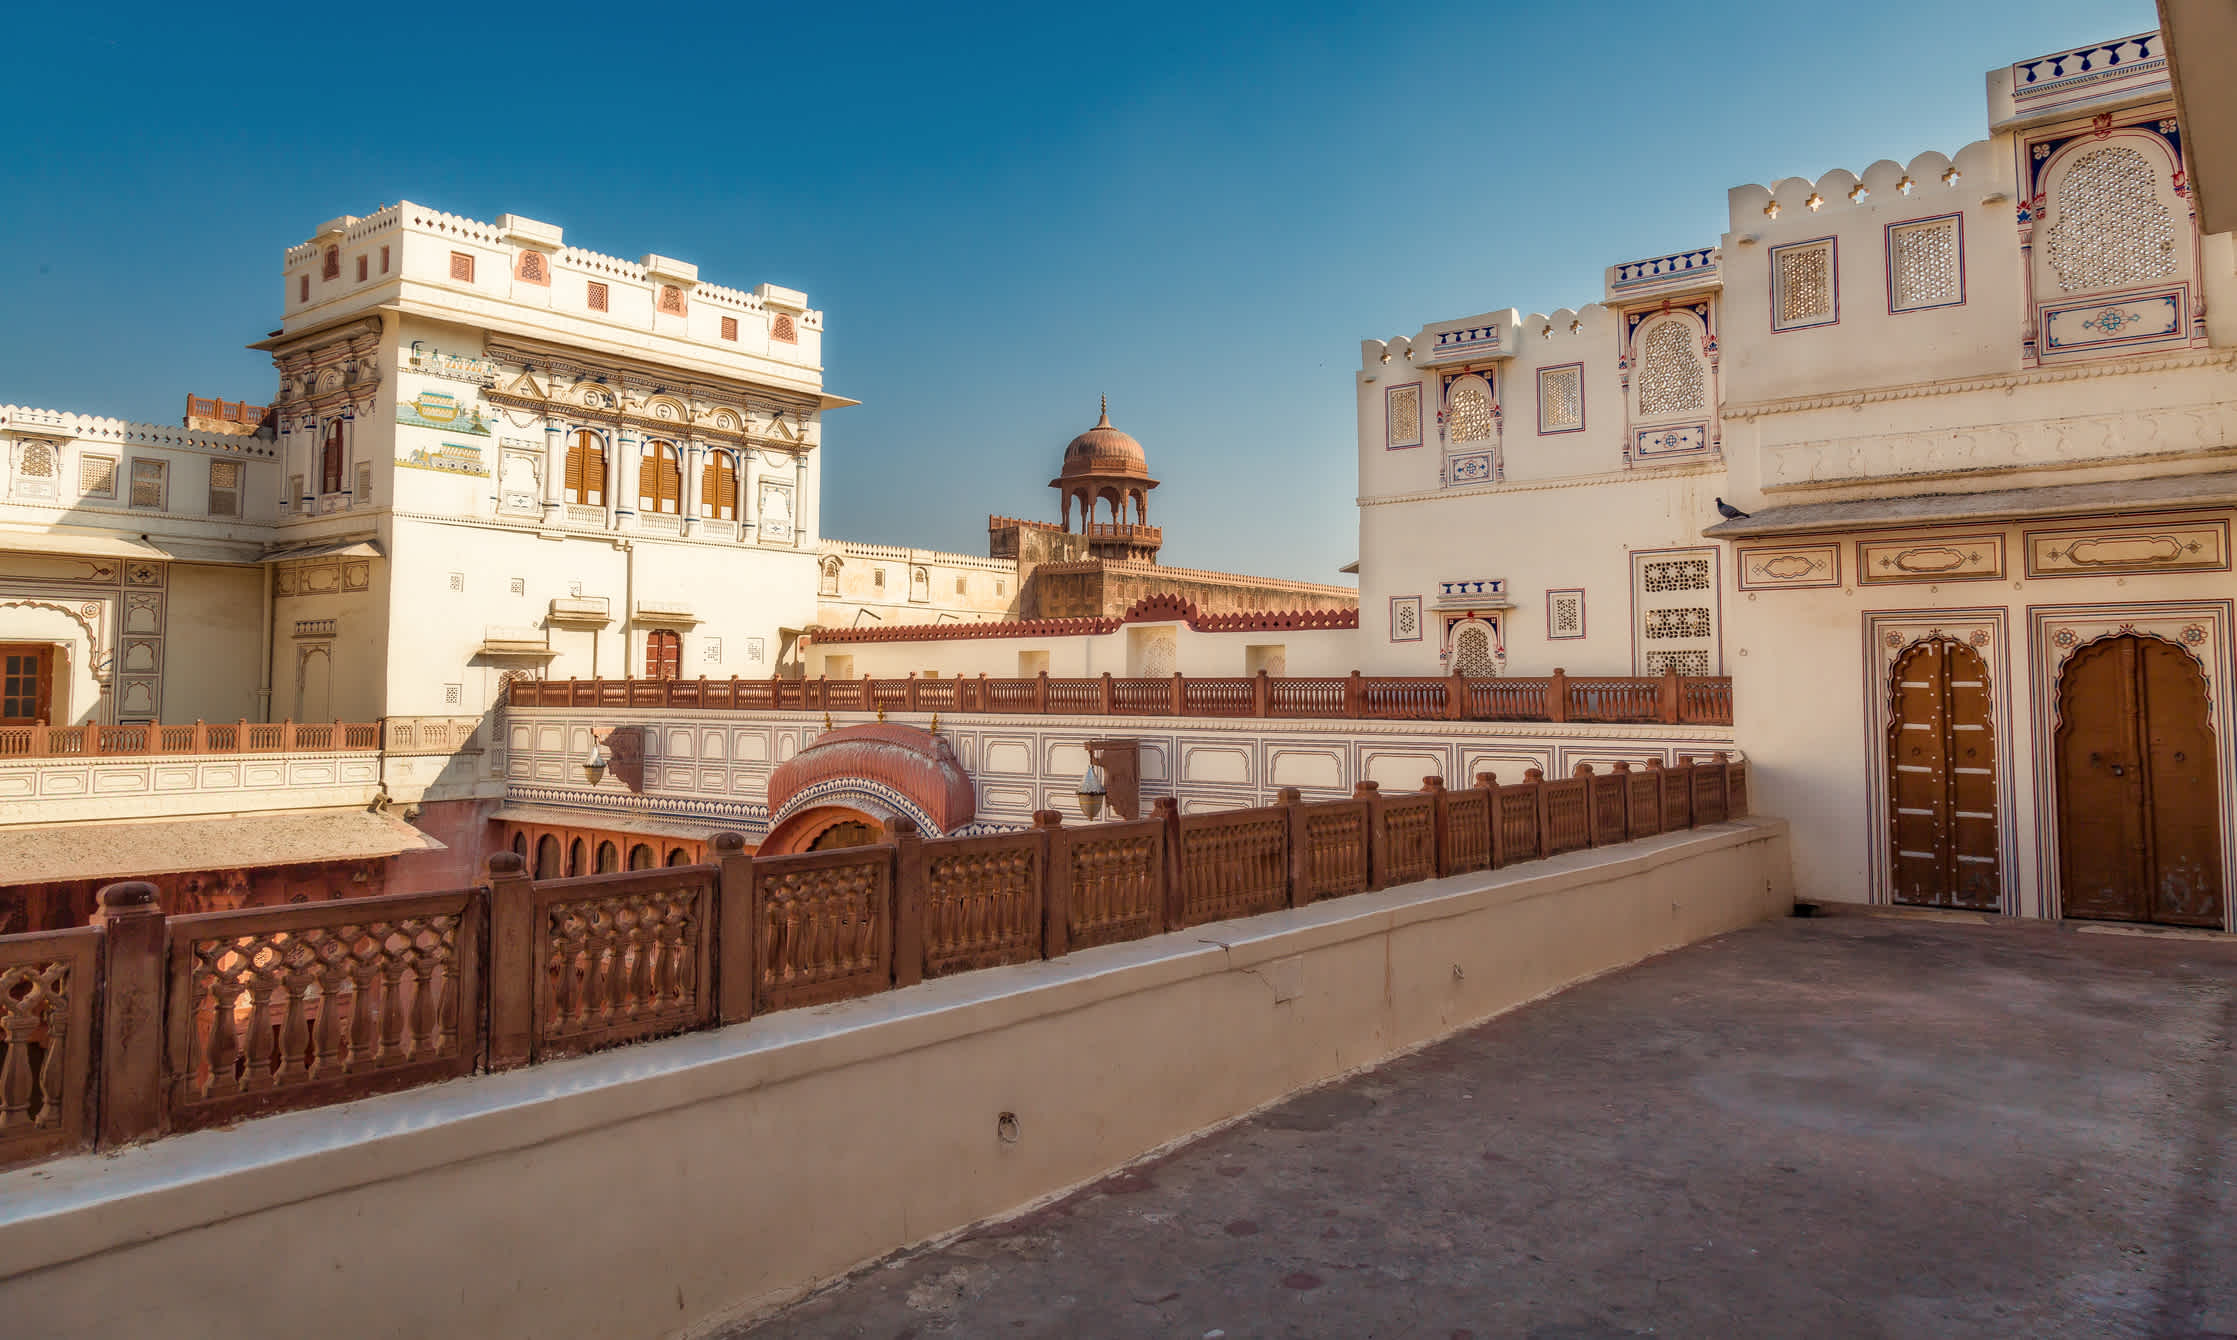 Das Junagarh Fort in Bikaner Rajasthan mit weißen Marmorstein und beeindruckender Innenarchitektur